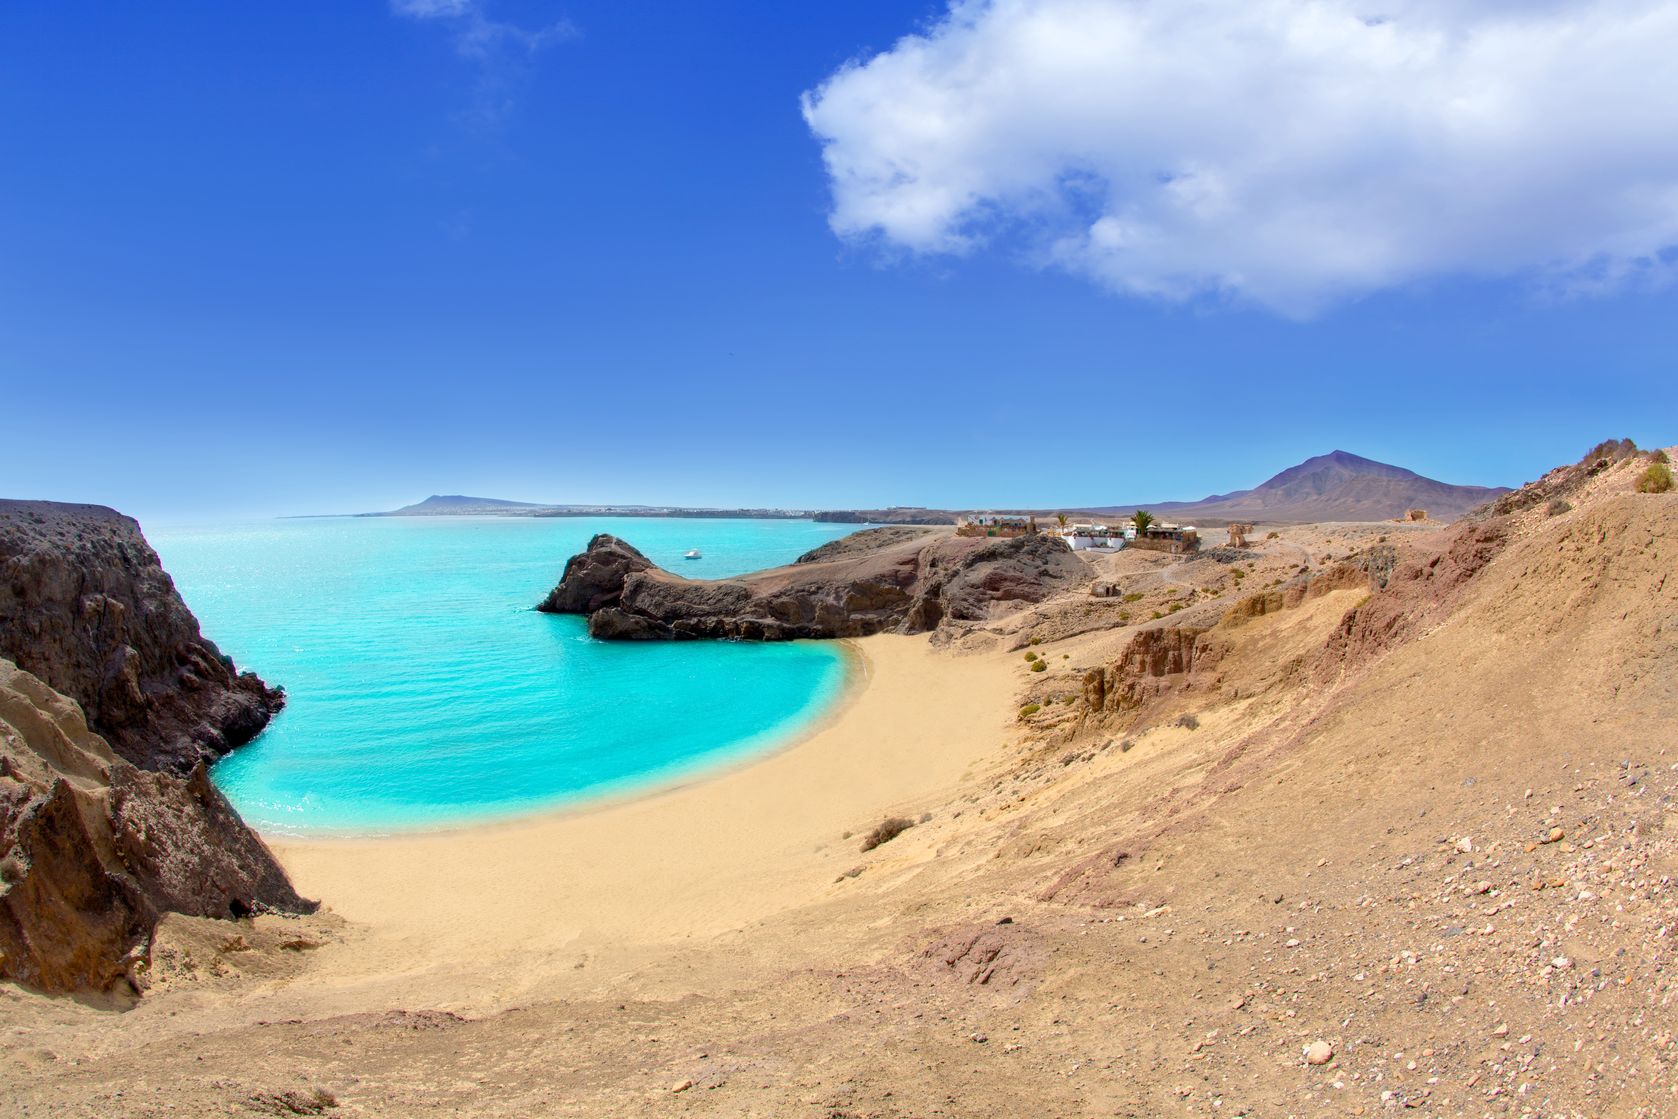 Az IBUSZ szervezésében Lanzarote vidékére is eljuthatnak a pihenni vágyók, ahol csodálatos tájak, aranyszínű homokos és kristálytiszta tengerpartok találhatóak.